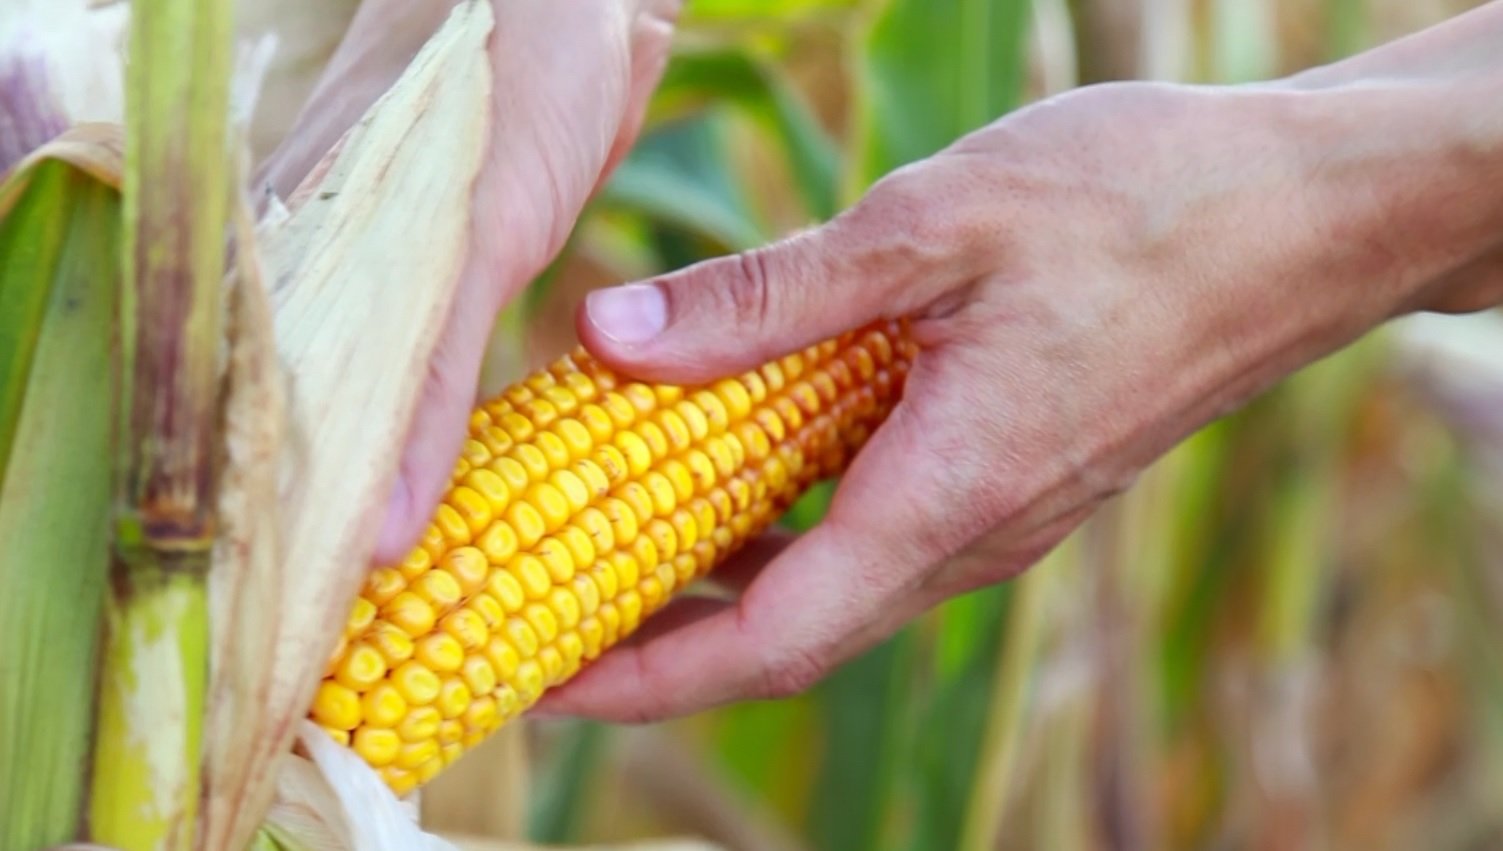 Demanda limitada derruba preços do milho no Brasil